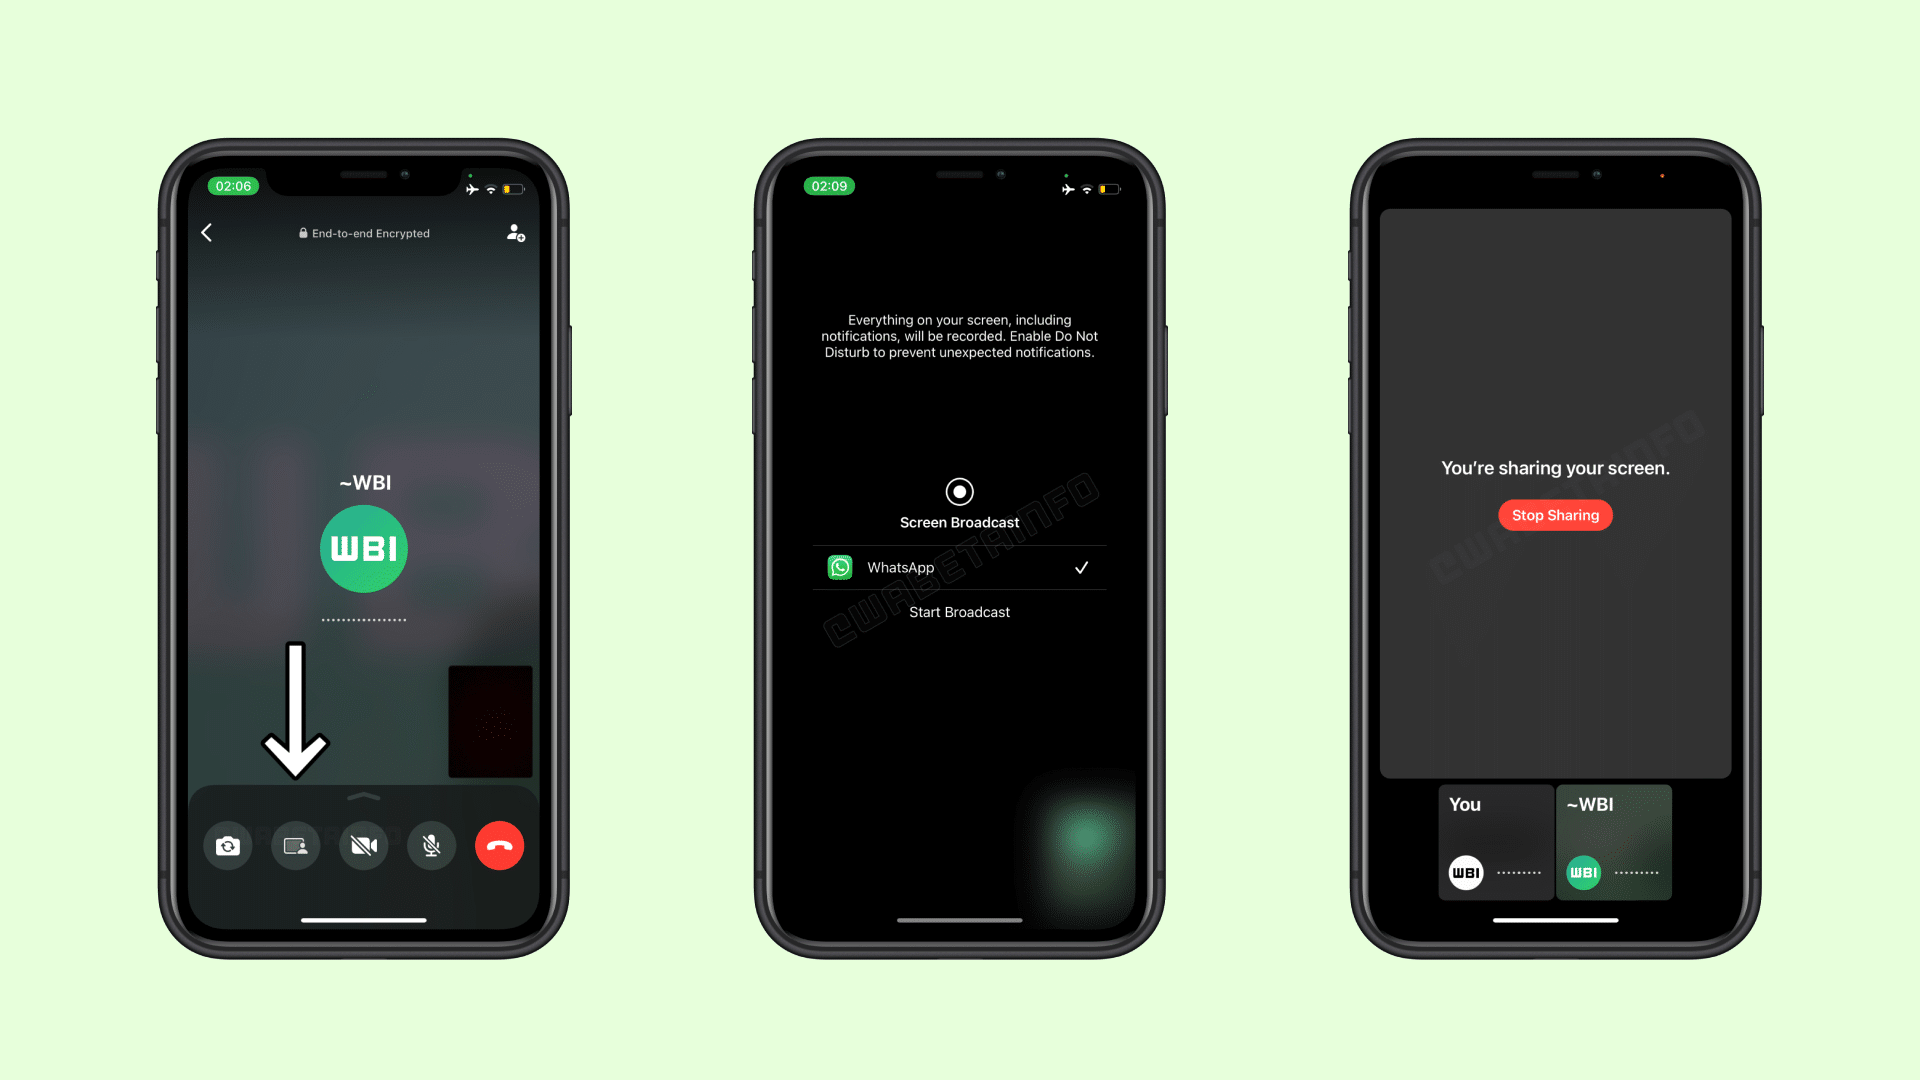 WhatsApp testa compartilhamento de tela durante ligações - MacMagazine